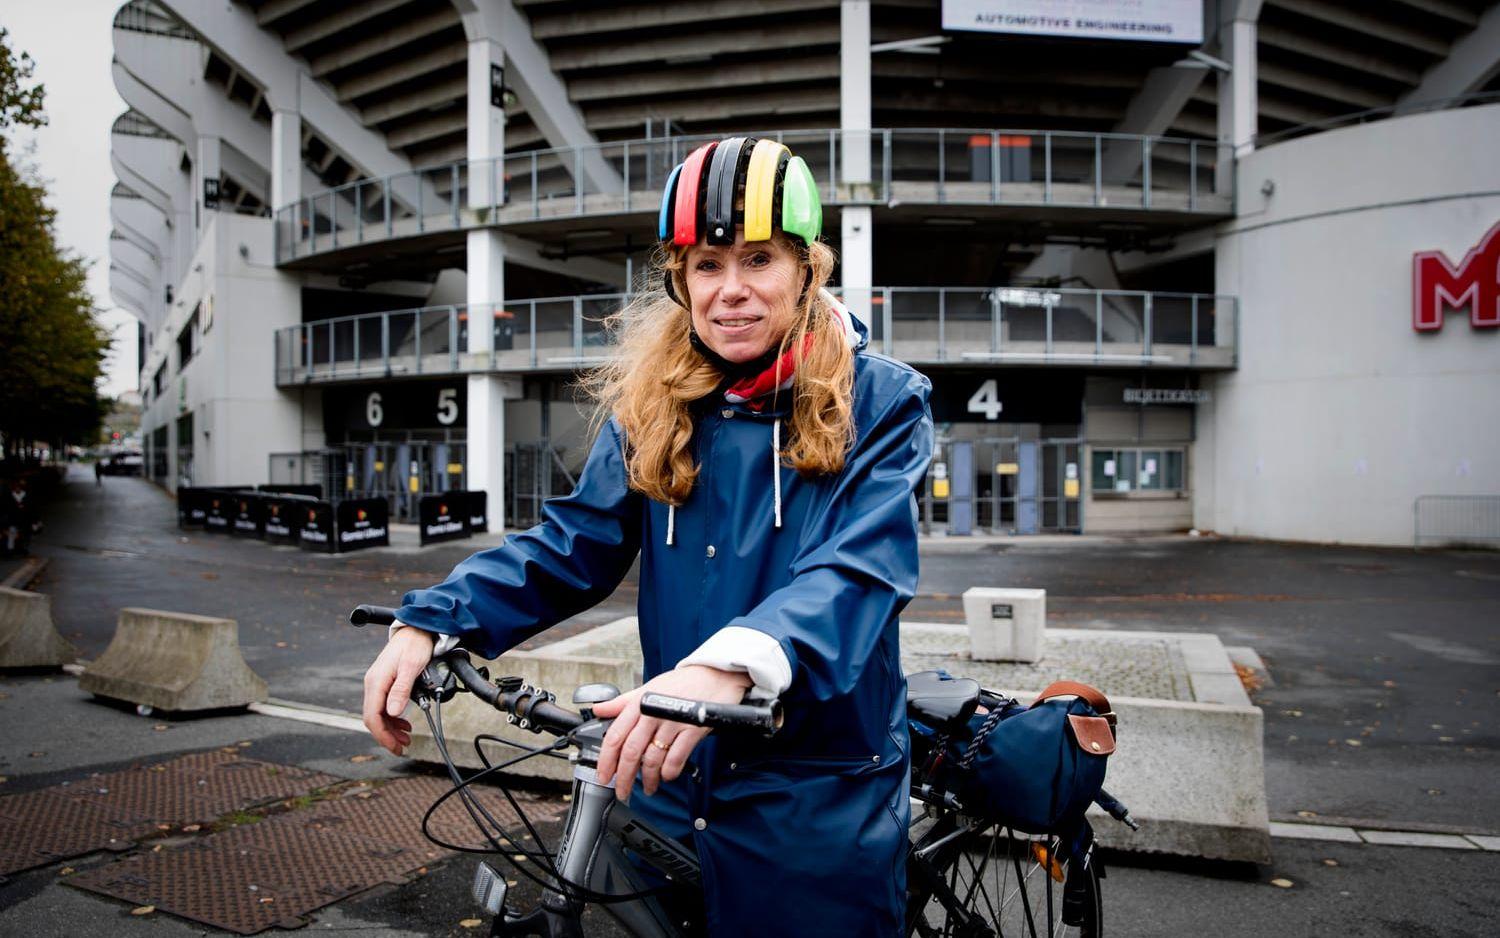 – Jag cyklar året runt. Det är snabbt, effektivt, man slipper vänta på bussar och i bilköer. Och så tänker jag på miljön också. Jag tycker att man ser fler cyklister som cyklar året om, säger Eva Fransén, Björkekärr. Bild: Jonas Lindstedt.